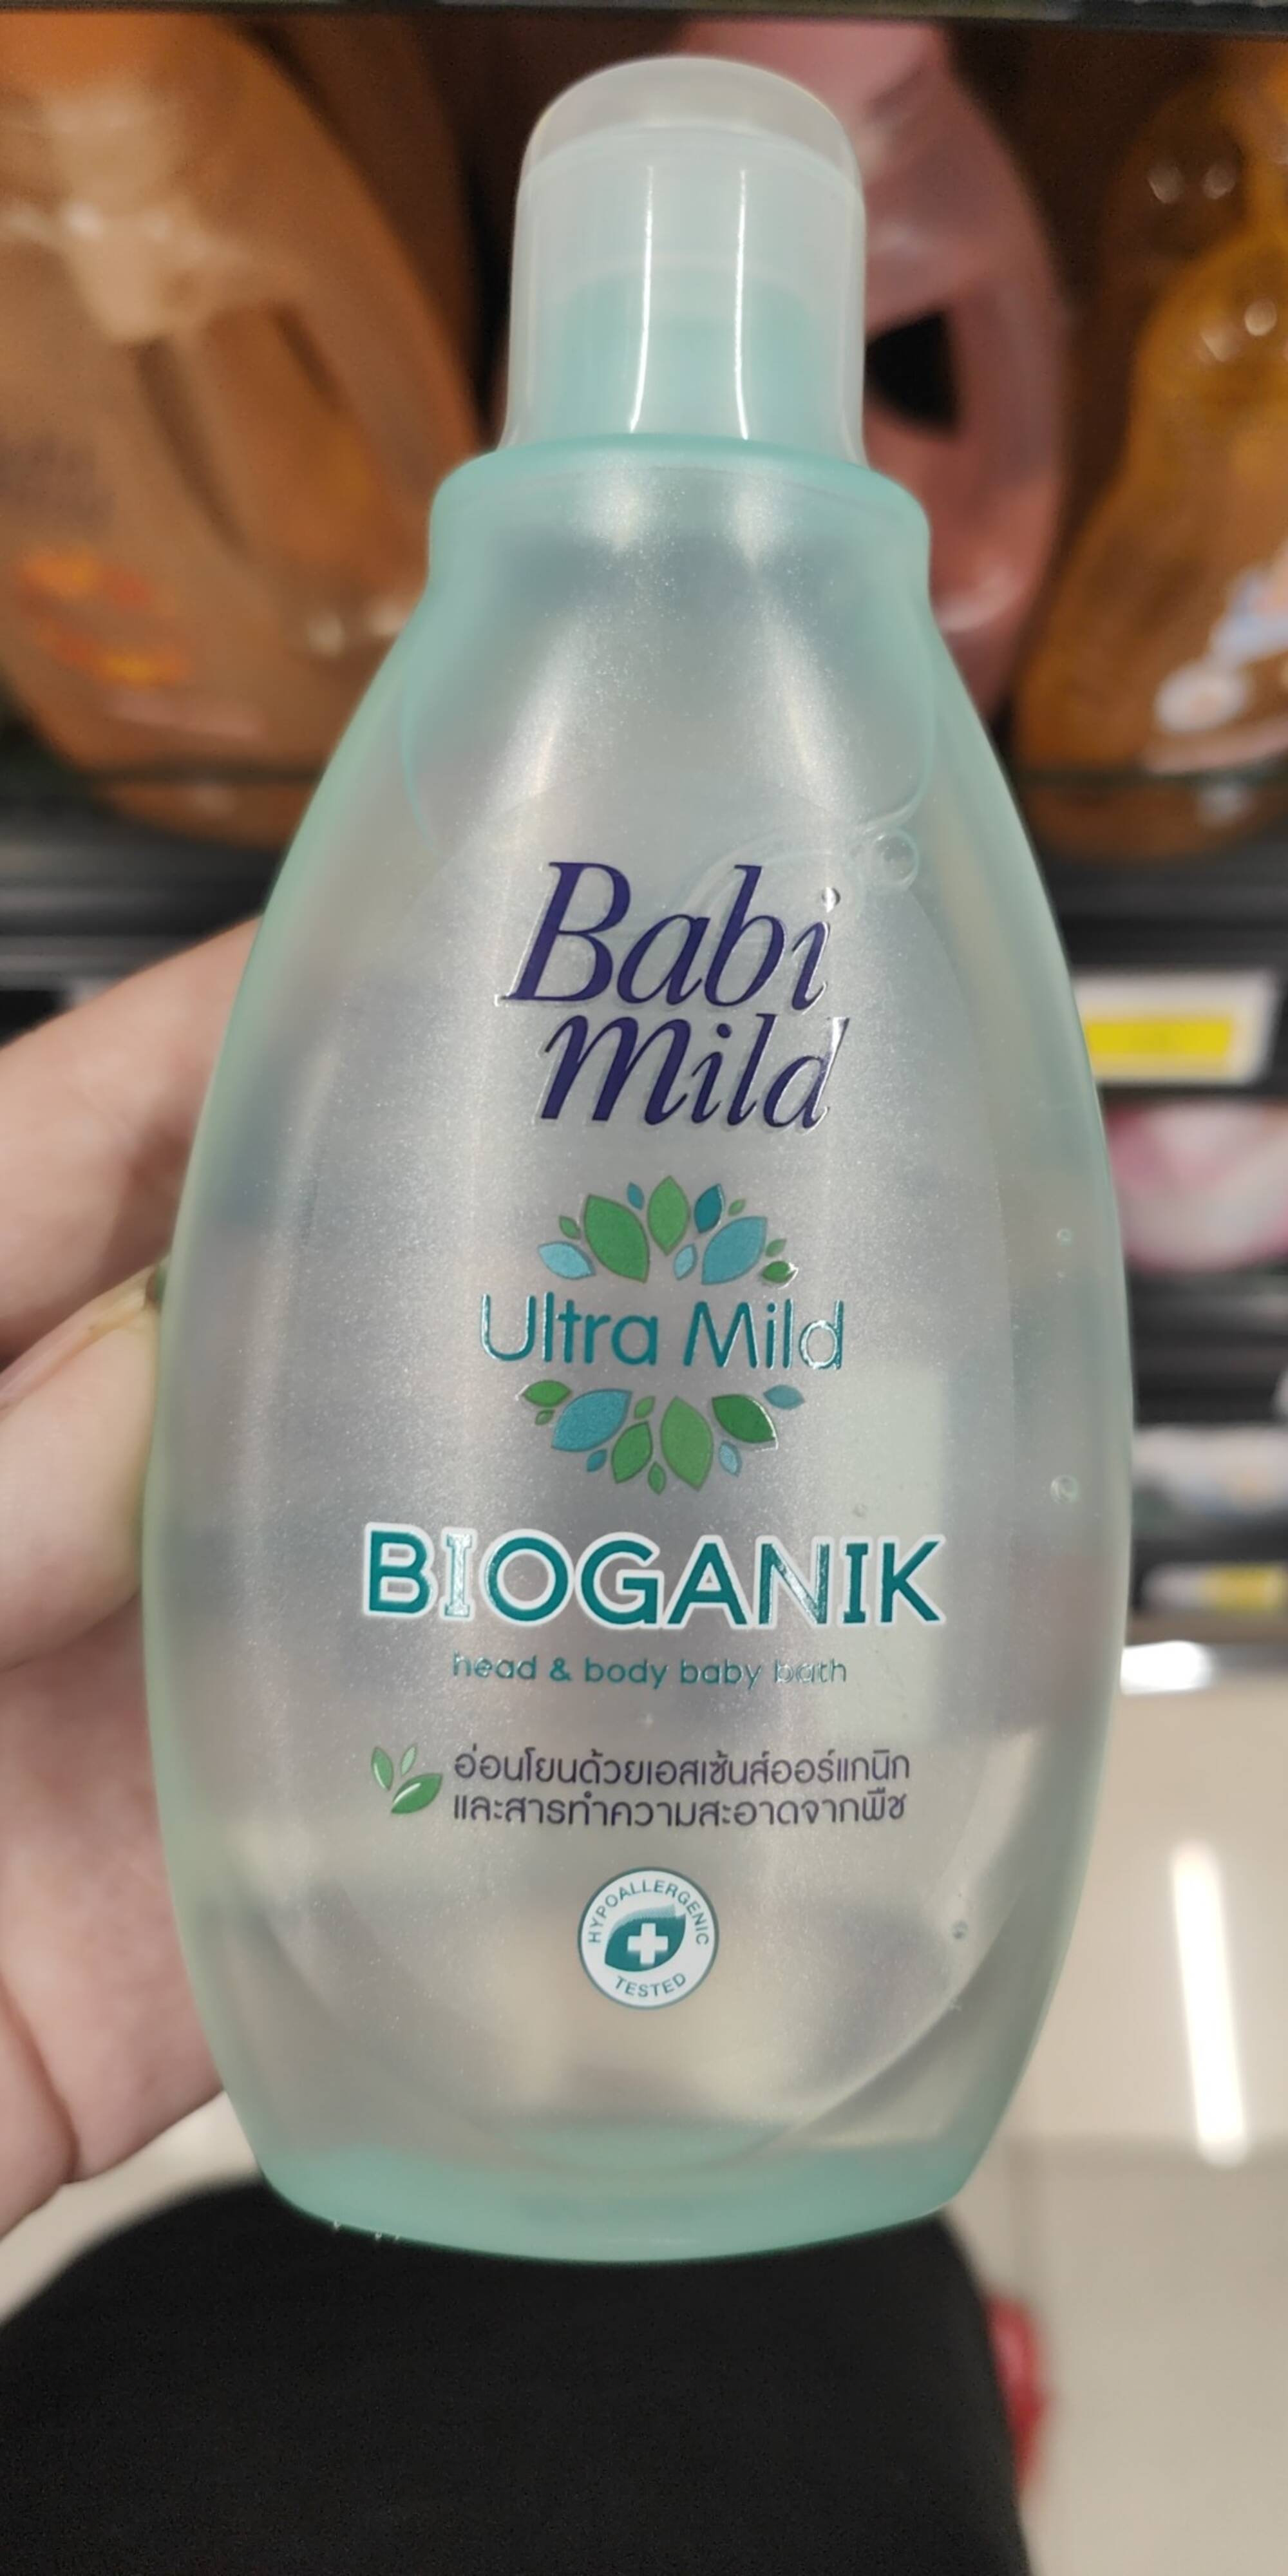 BABI MILD - Bioganik - Head & body baby bath ultra mild